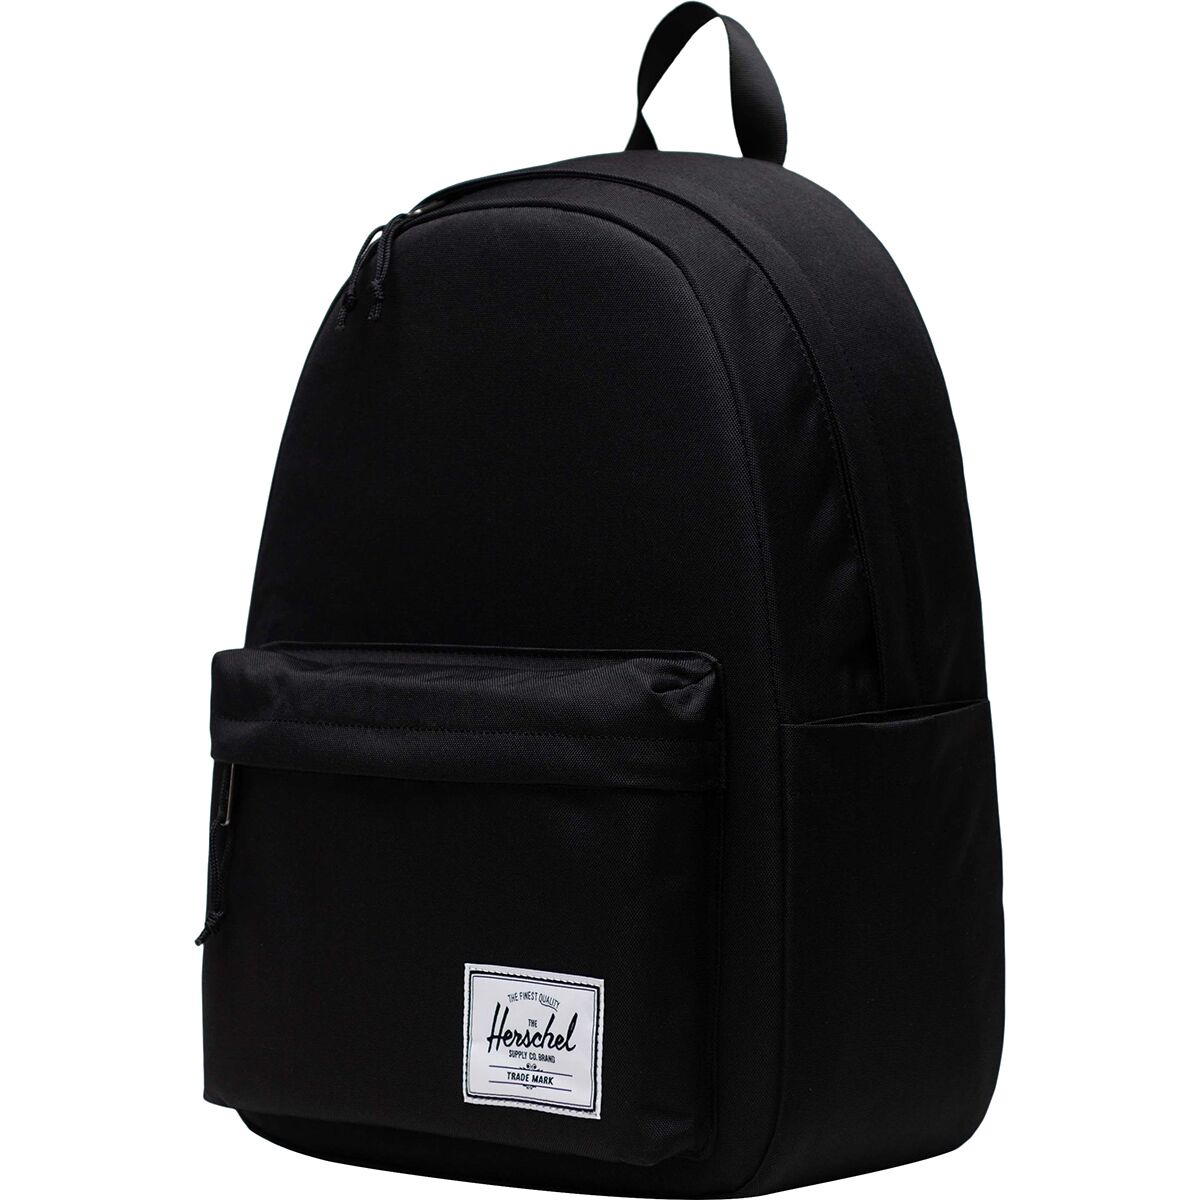 Классический рюкзак xl 26 л Herschel Supply, черный рюкзак herschel classic xl 10492 grey black 30 l